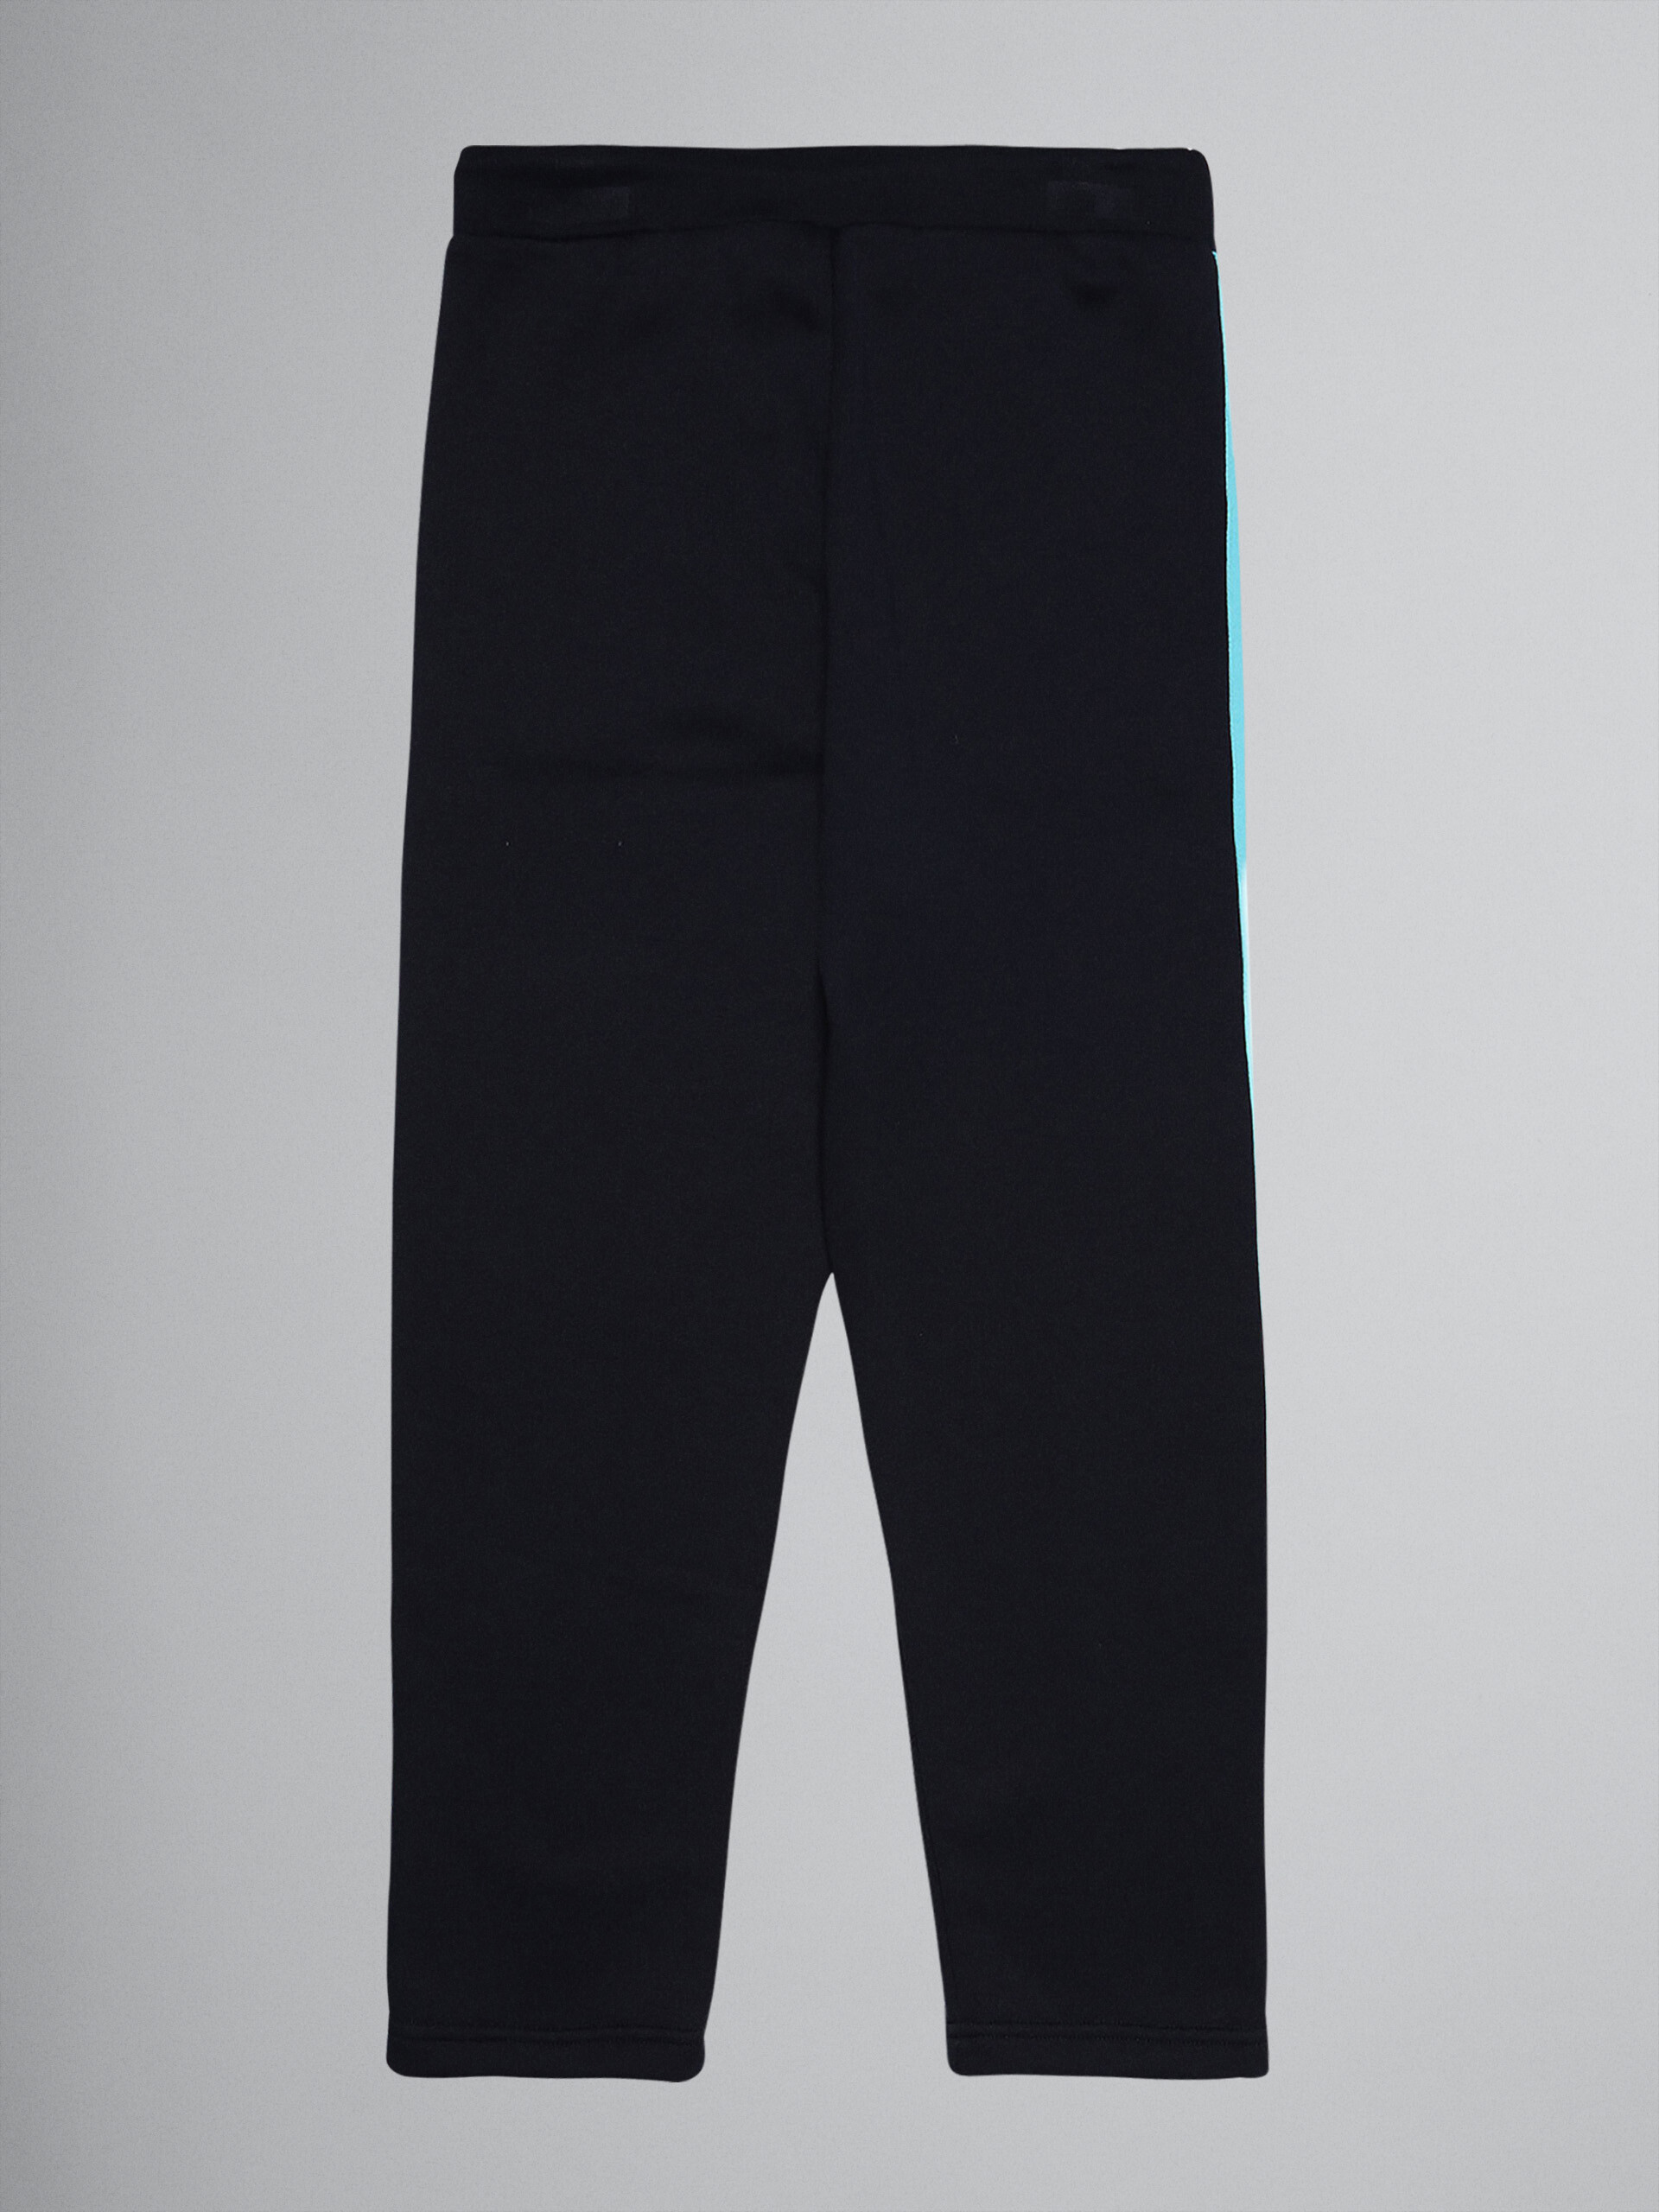 Blue technical cotton track pants - Pants - Image 2